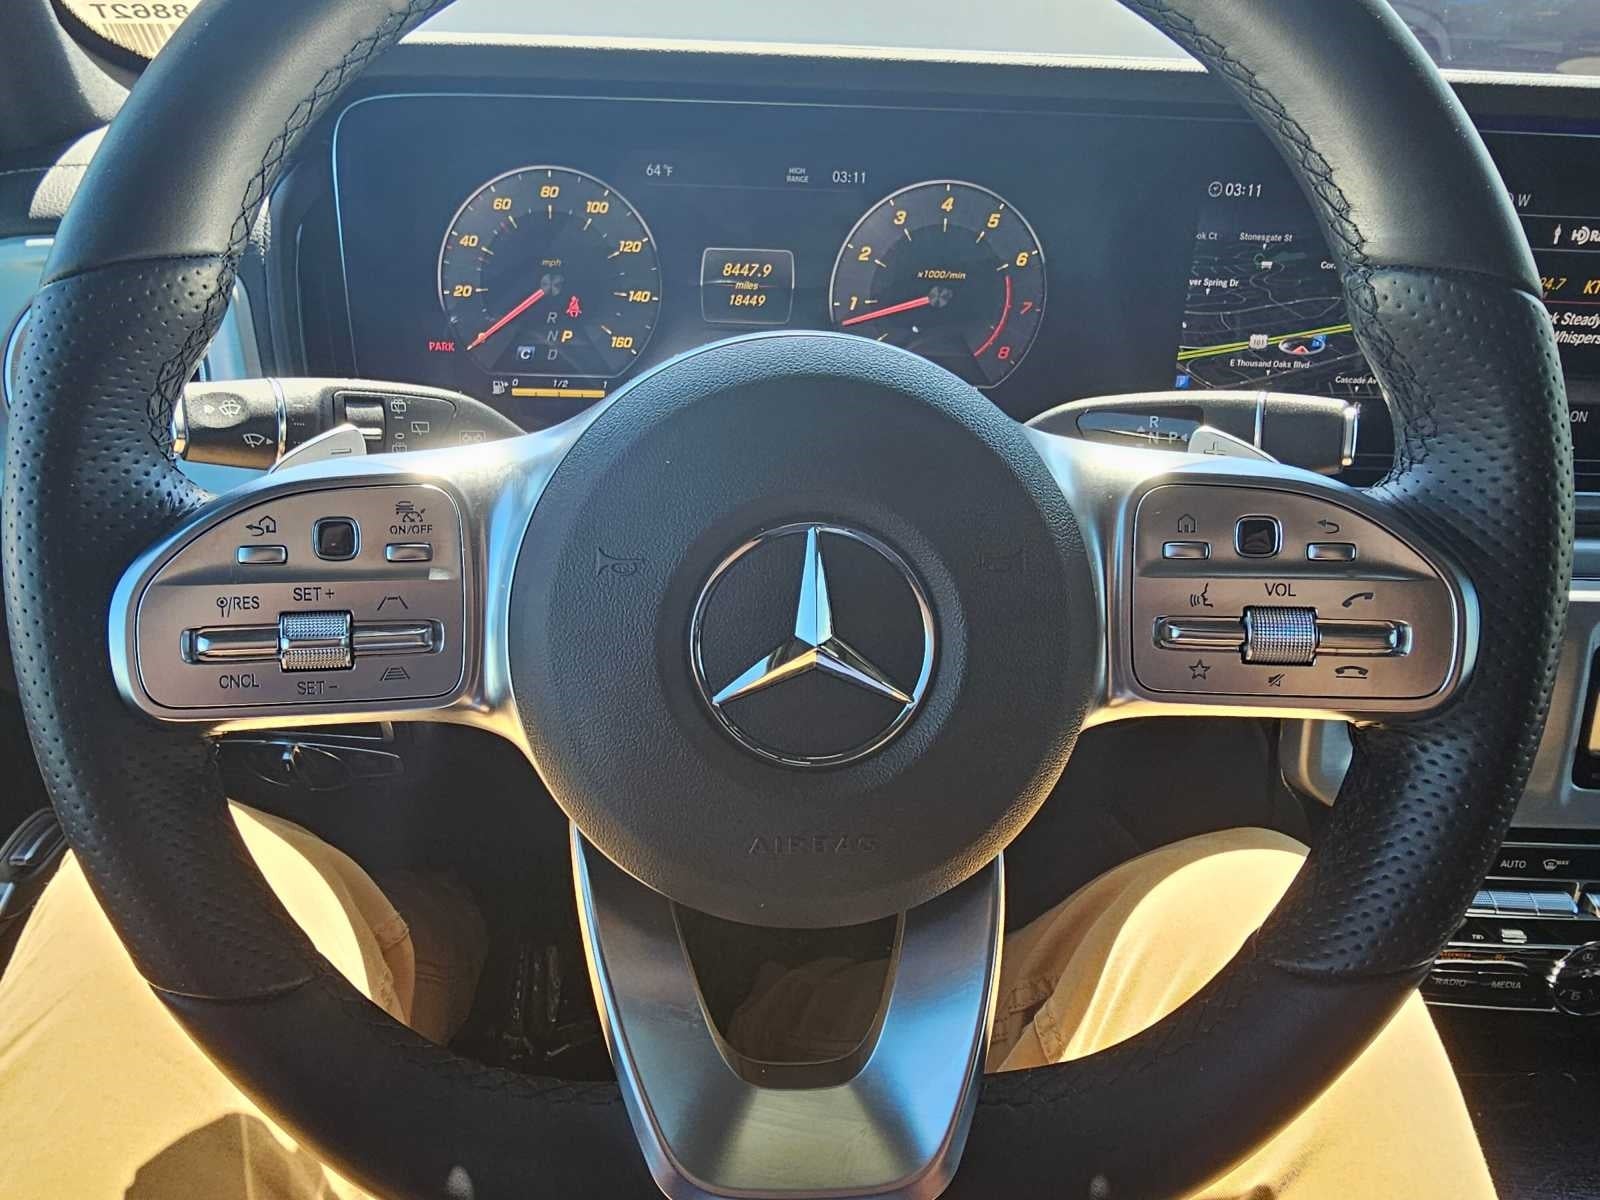 2021 Mercedes-Benz G-Class G 550